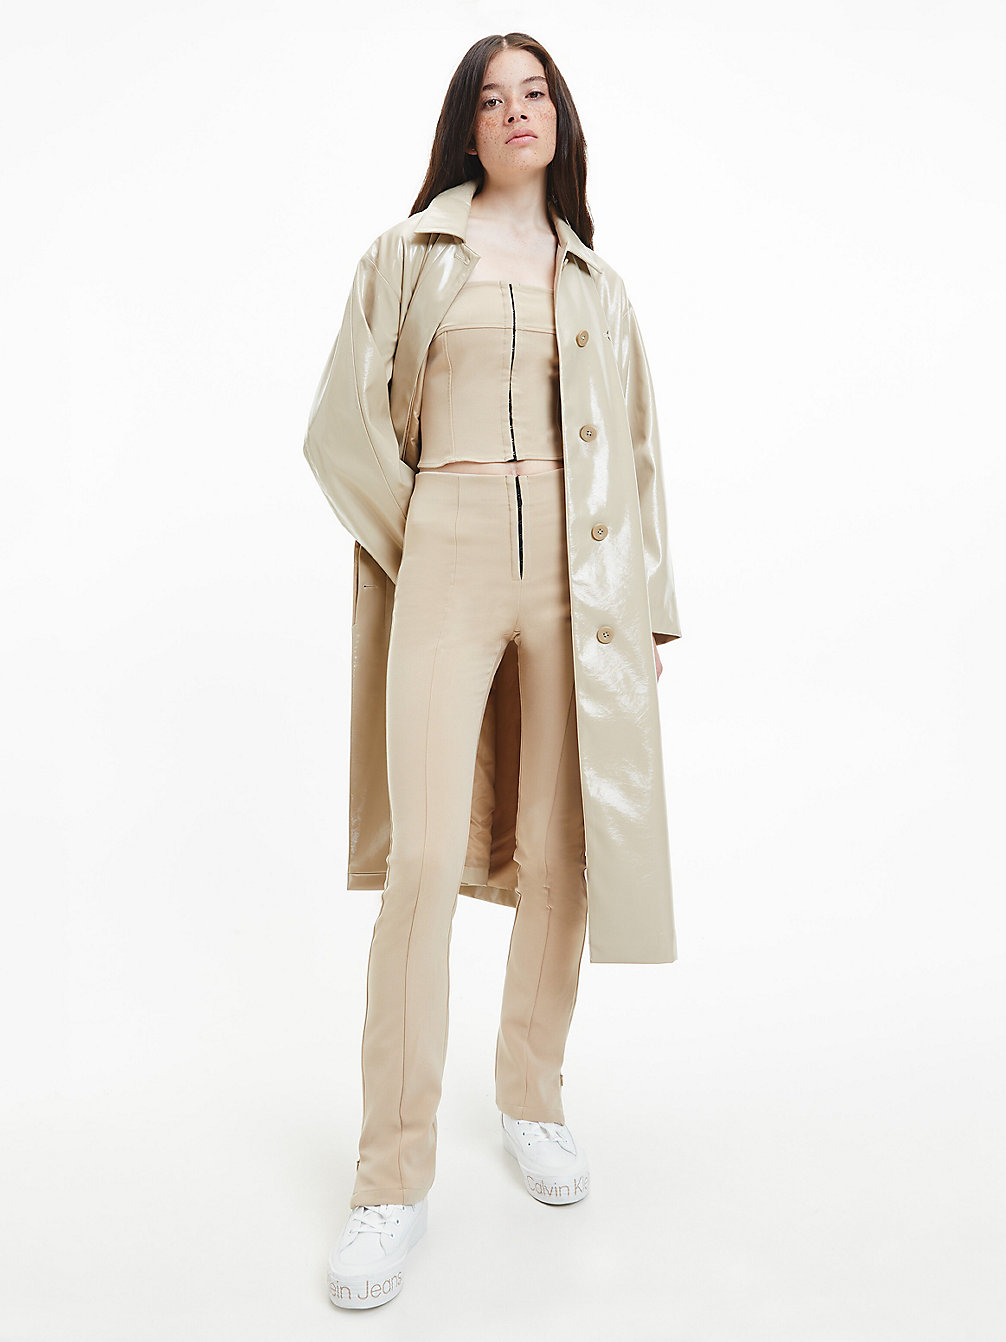 TRAVERTINE Oversized Mantel Im High-Gloss-Look undefined Damen Calvin Klein